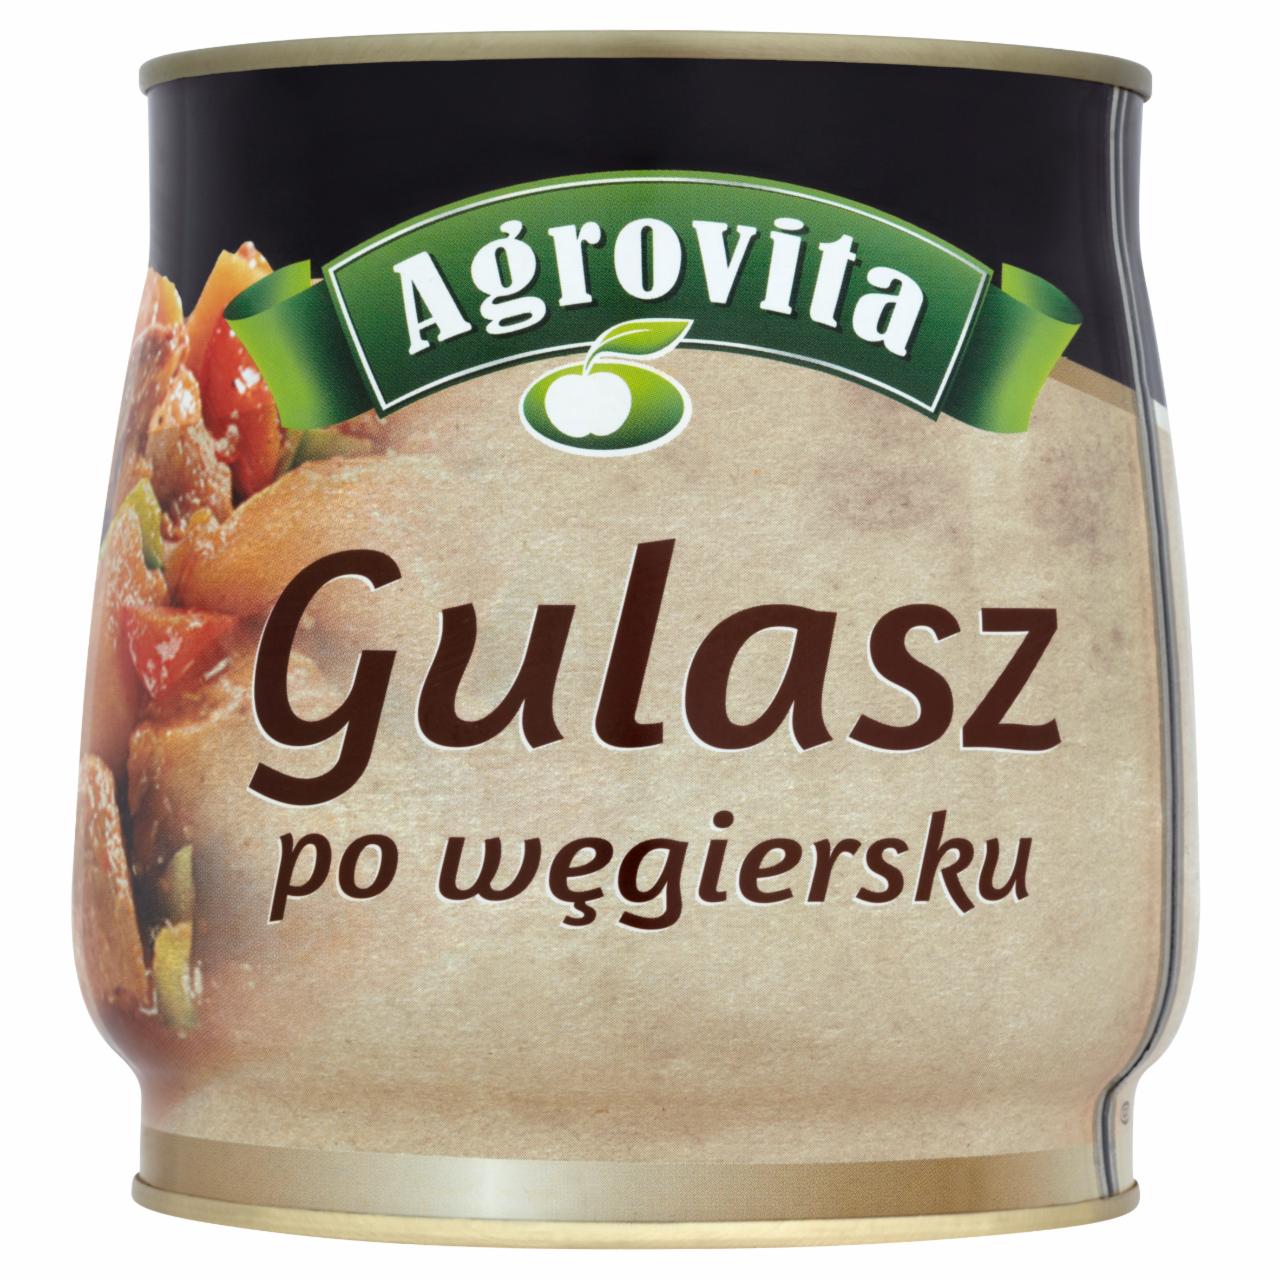 Zdjęcia - Agrovita Gulasz po węgiersku 920 g